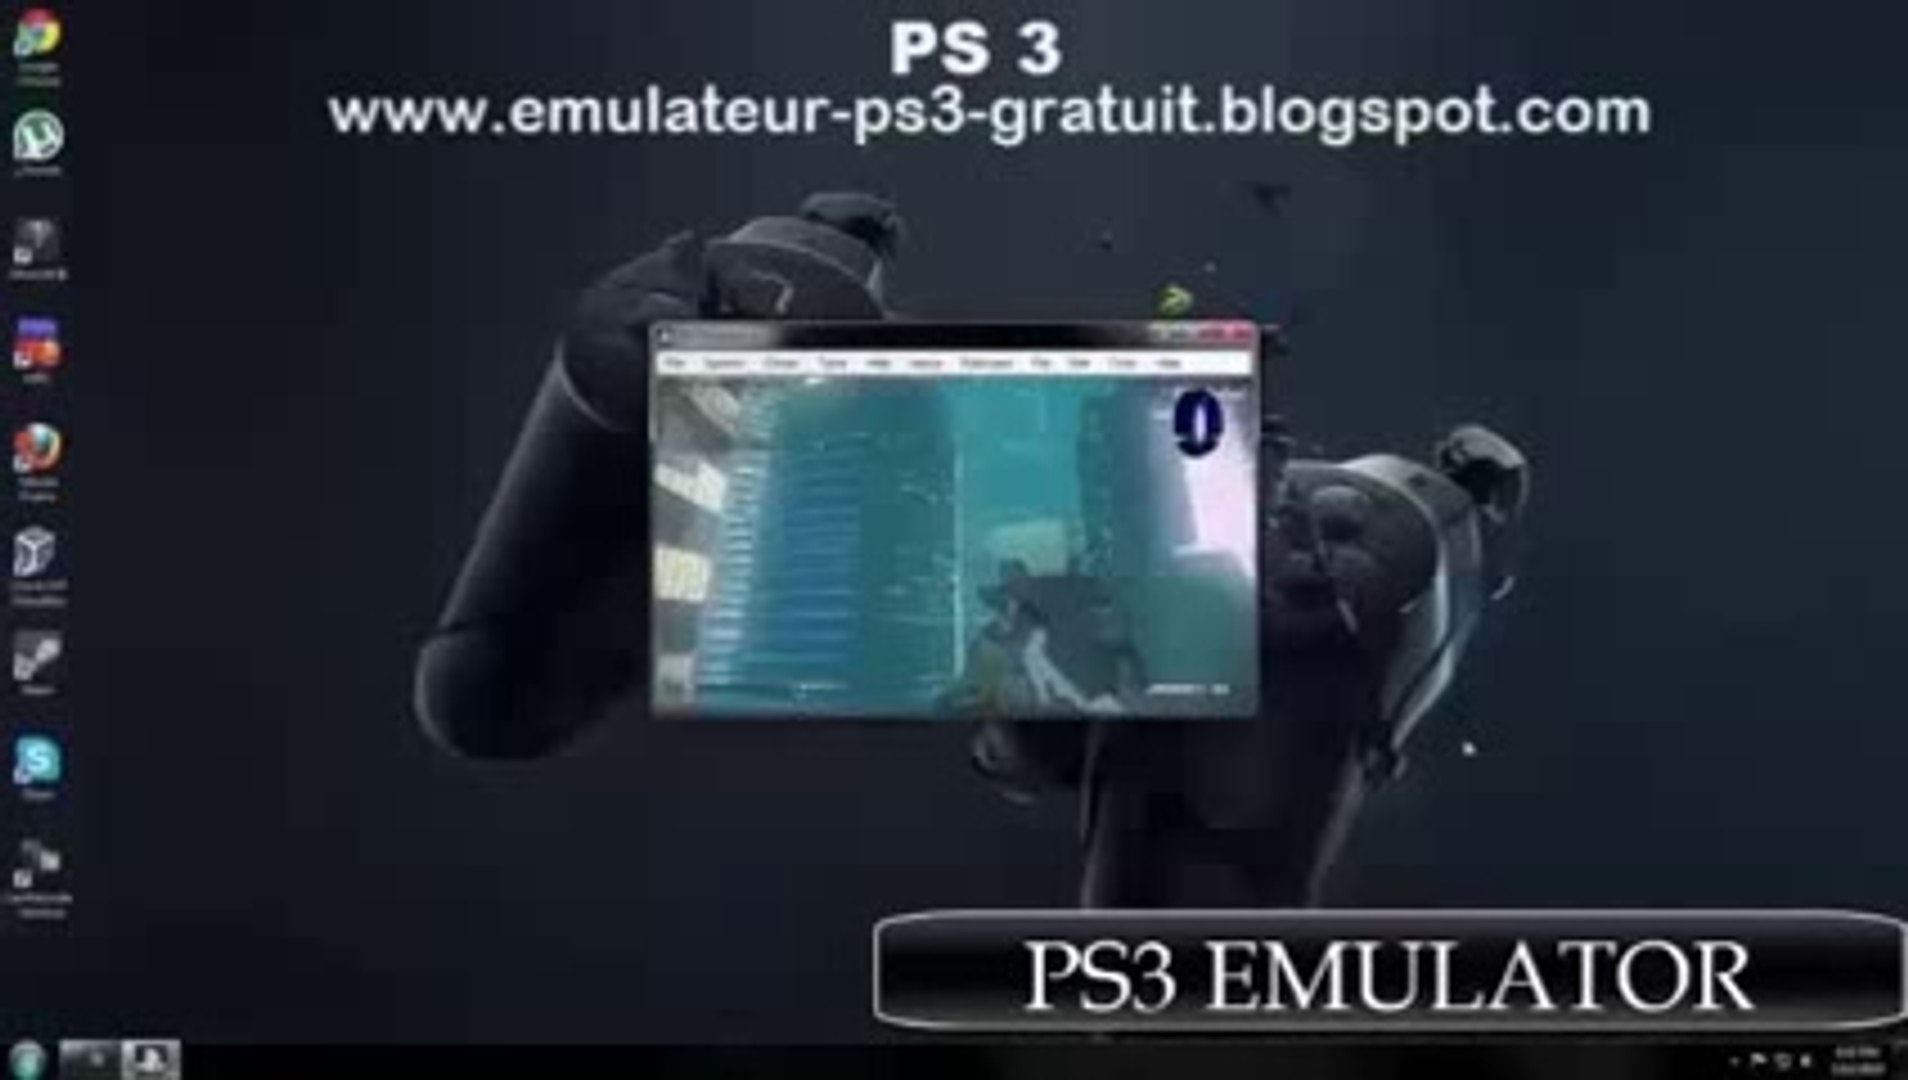 ▷ Emulateur ps3 pour pc - Telecharger emulateur ps3 - video Dailymotion